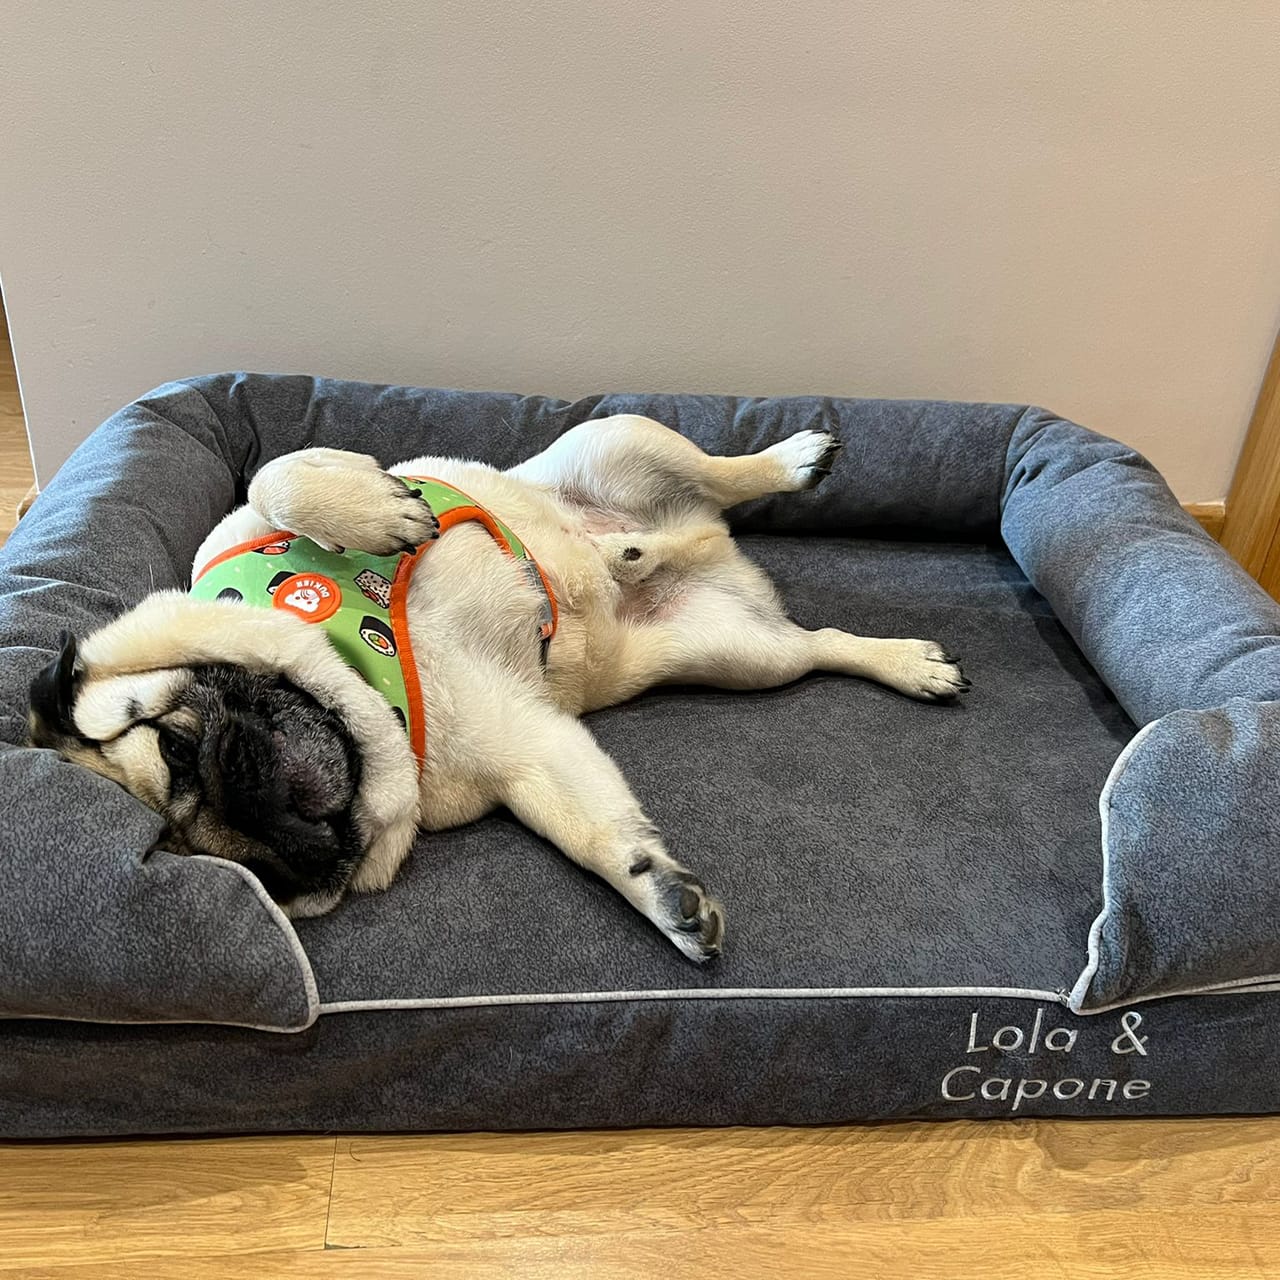 Carlino tumbado bocarriba en una cama grande de viscoelástica para perros